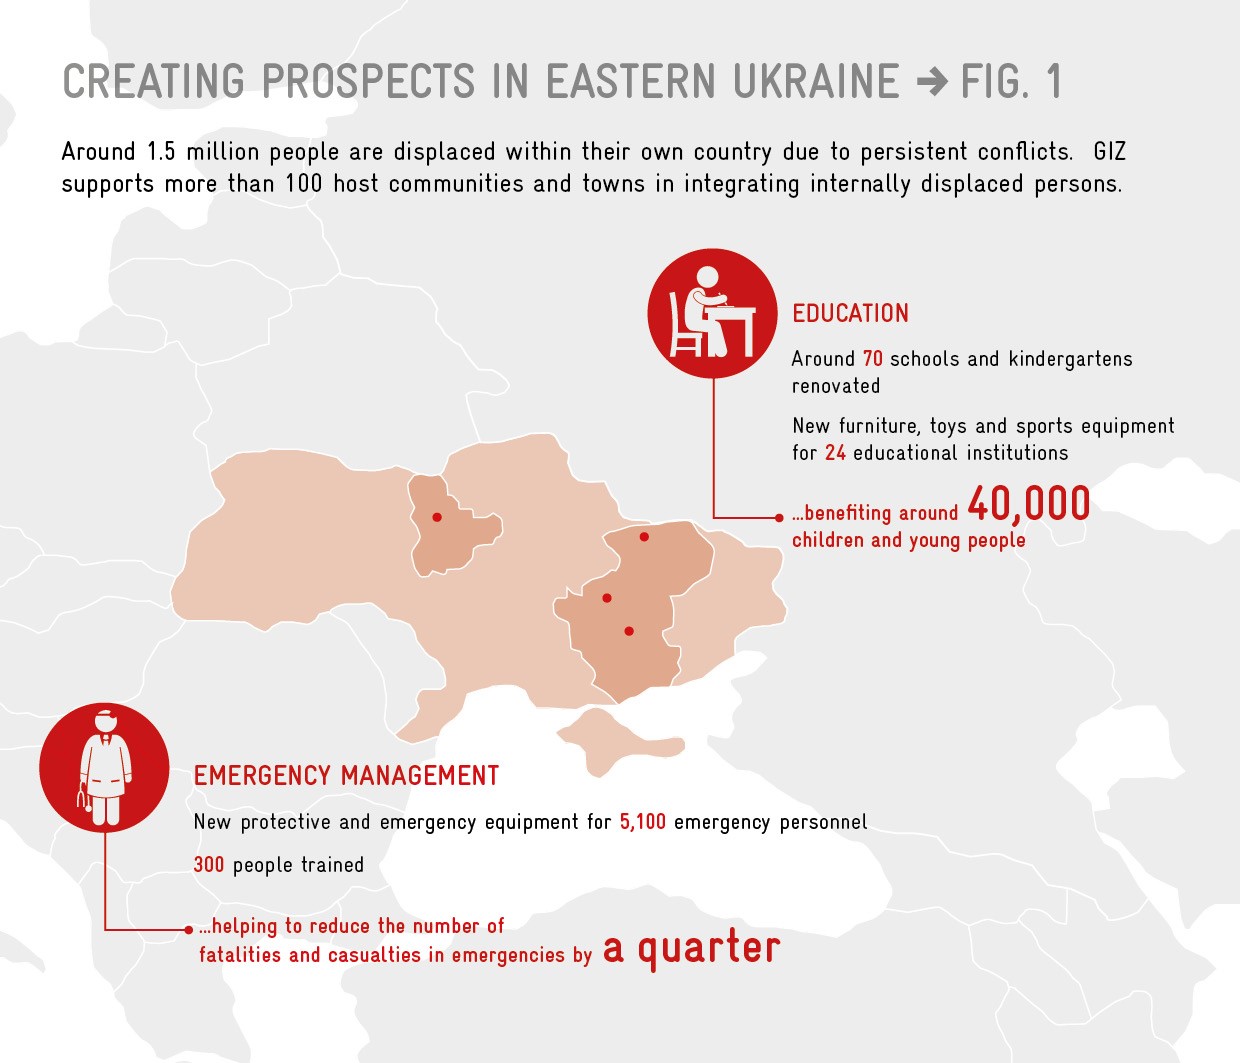 Eastern Ukraine Support For Host Communities